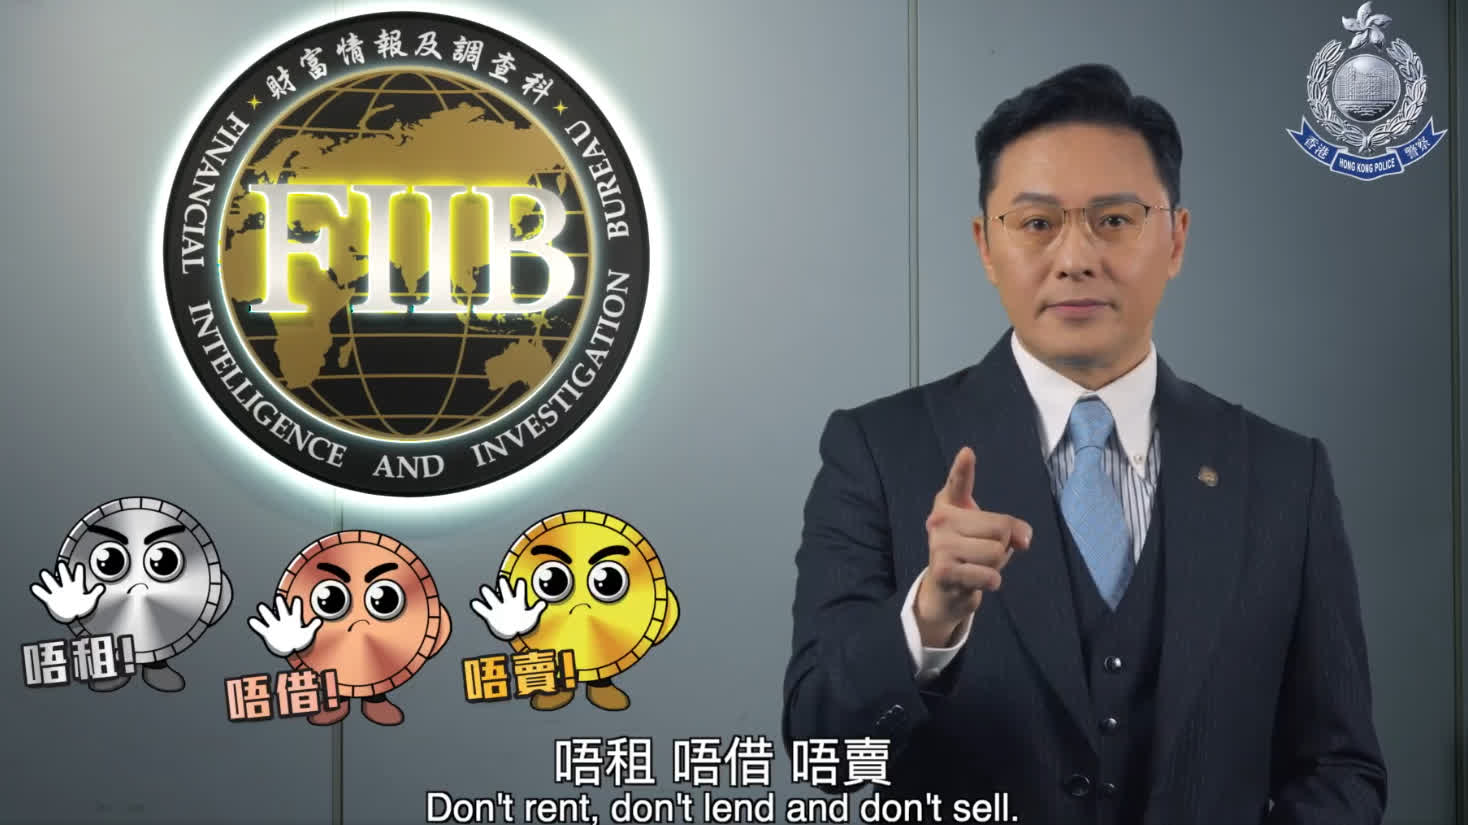 （有片）反洗黑錢宣傳月︱「不租、不借、不賣」！警方提醒市民勿借賣戶口